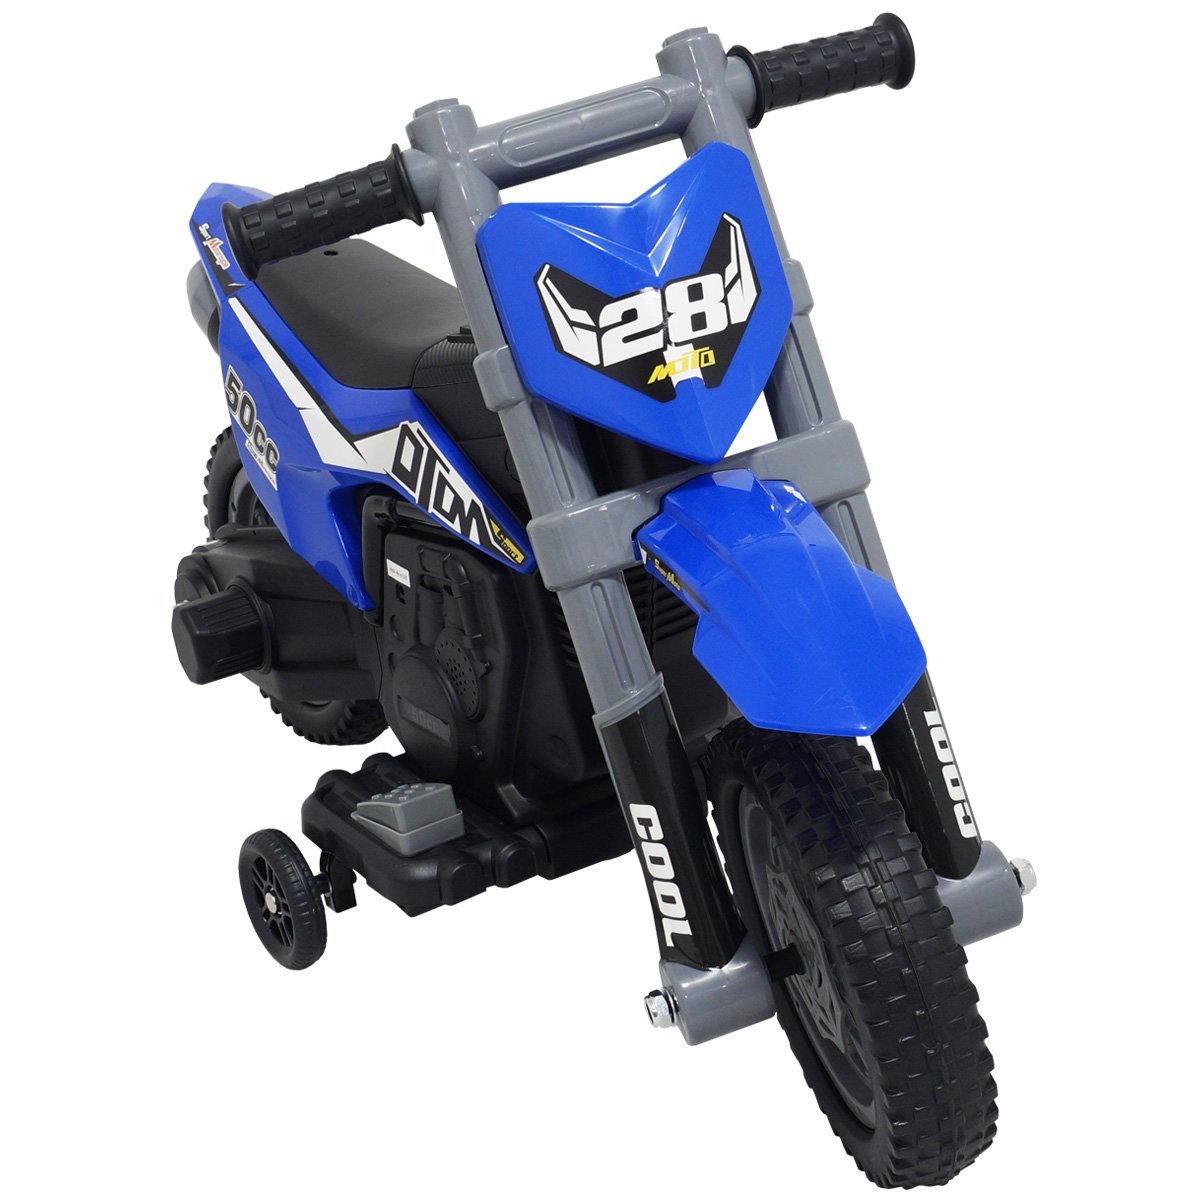 Mini Moto Cross Infantil Elétrica 6V Recarregável Triciclo Criança Bivolt Brinqway Bw233 Motorizado  - 2